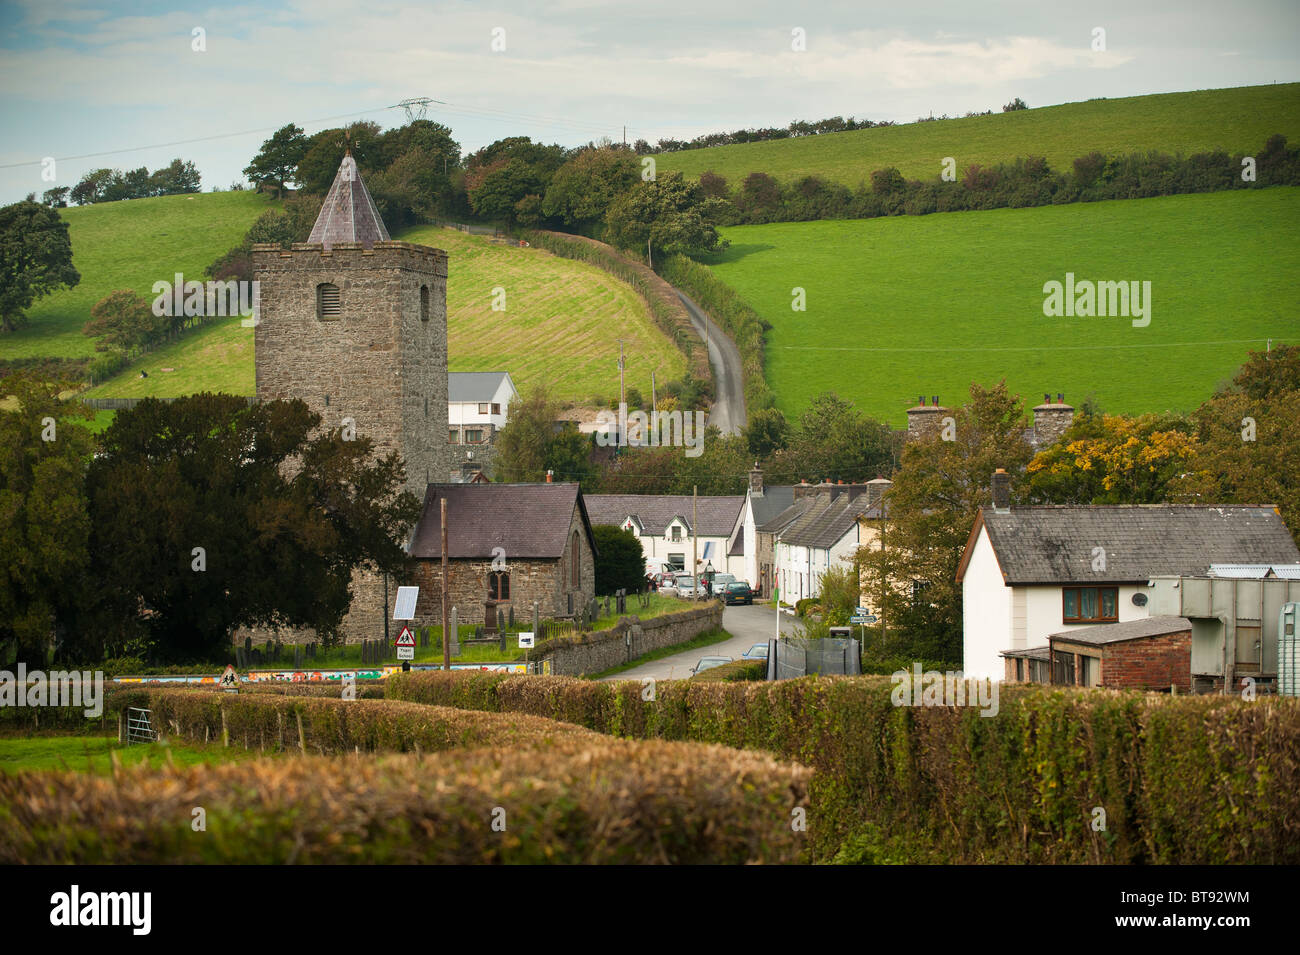 Creuddyn Llanfihangel y village, ancienne église et tour, maisons, maisons à la campagne, rural Ceredigion, pays de Galles UK Banque D'Images